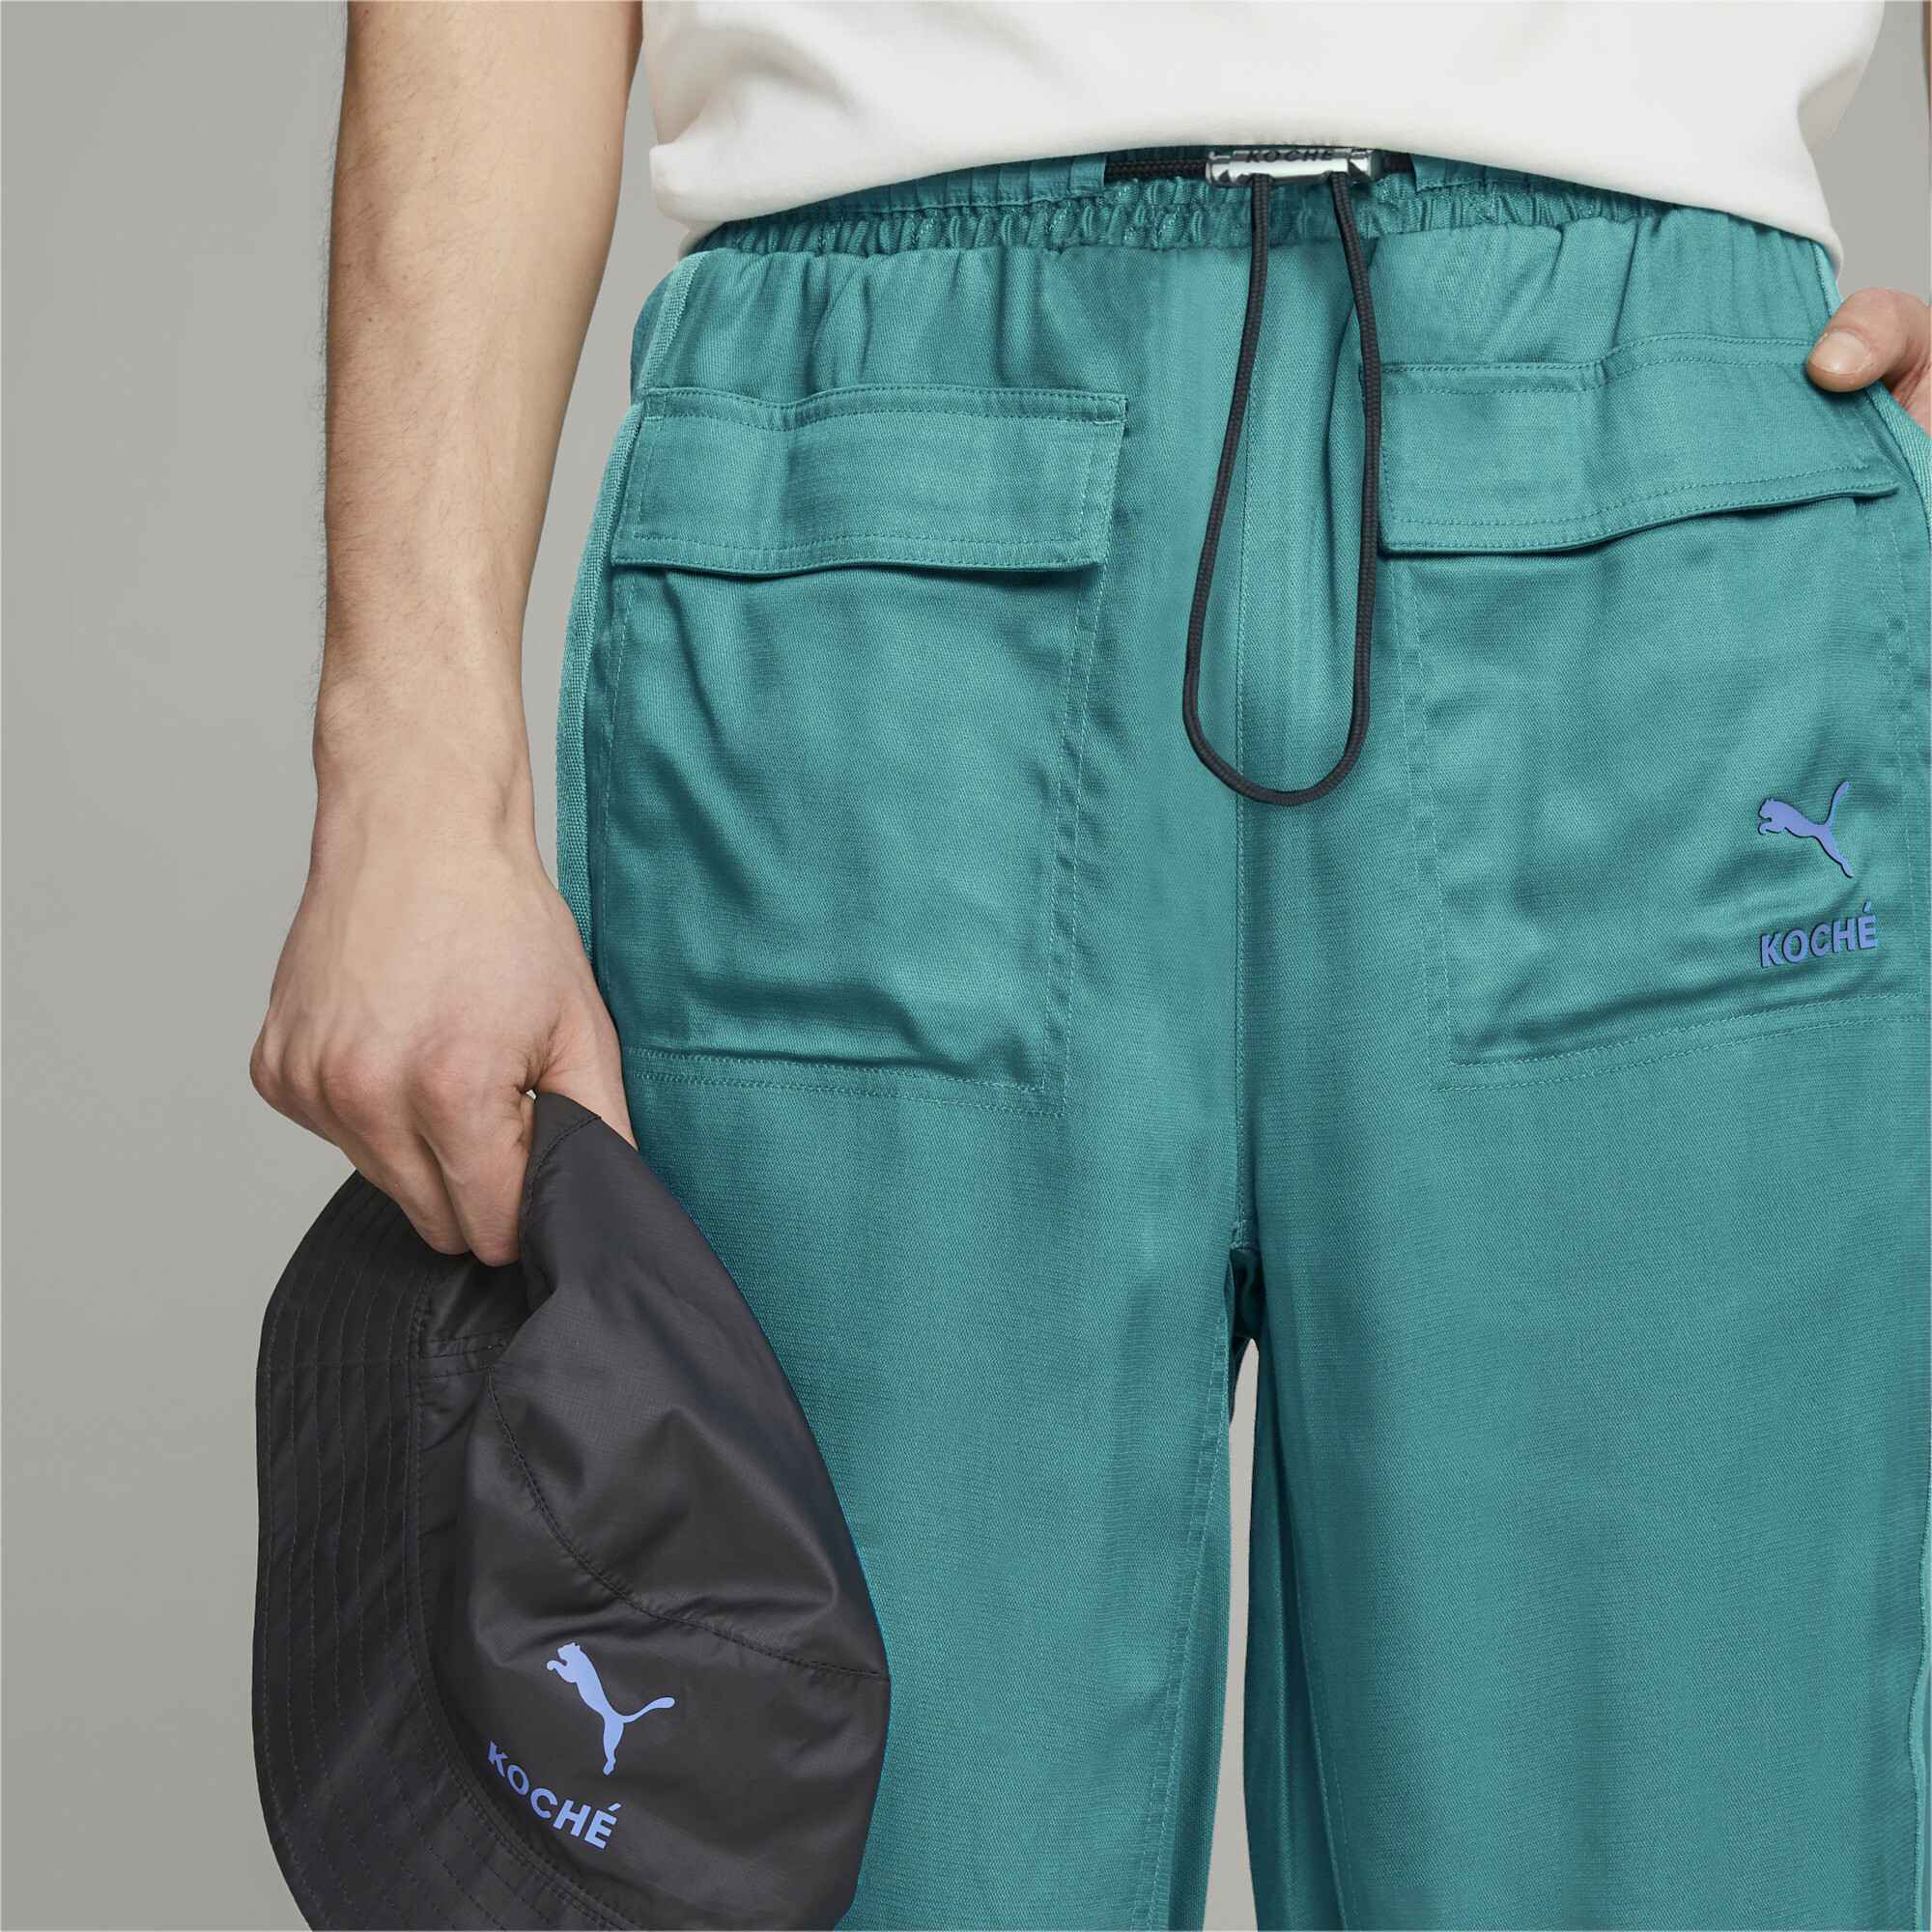 Men's PUMA X KOCHÃ Reversible Pants In Green, Size Large